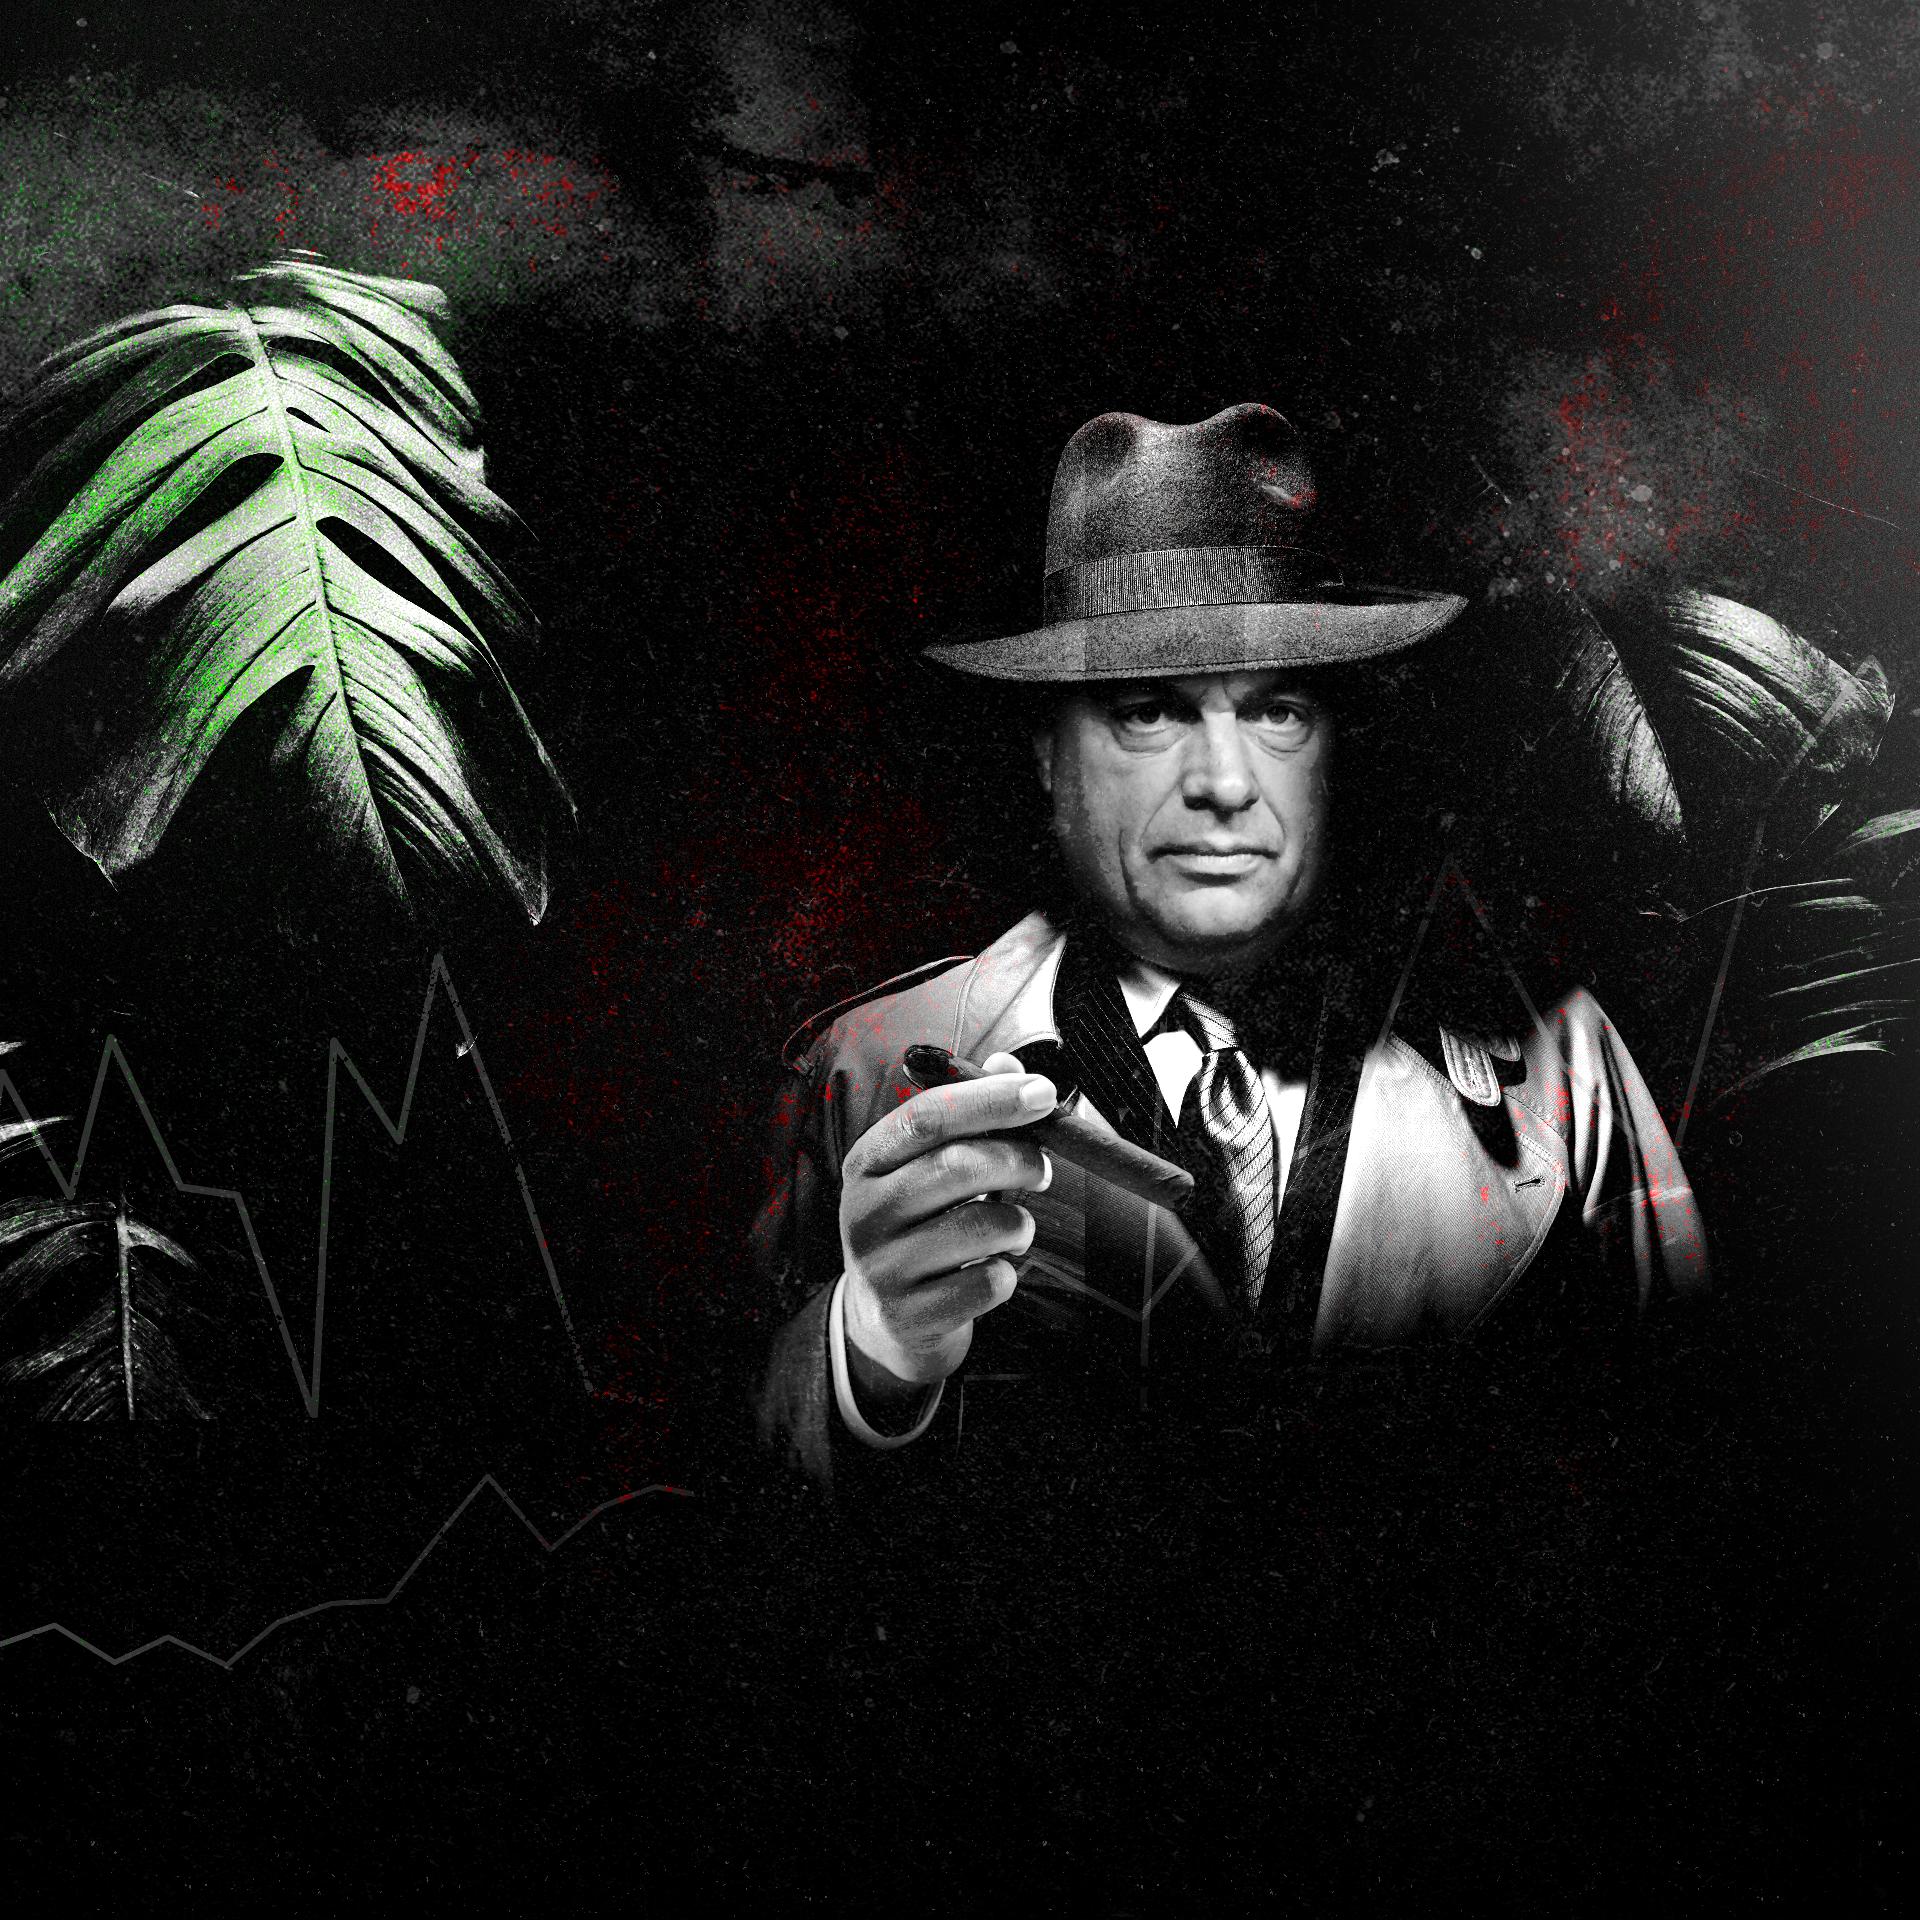 Fotomontaż Wiktora Orbana w gangsterskim stroju: kapeluszu z rondem, garniturze i prochowcu, trzymającego cygaro. Fotomontaż jest w stylu filmów noir